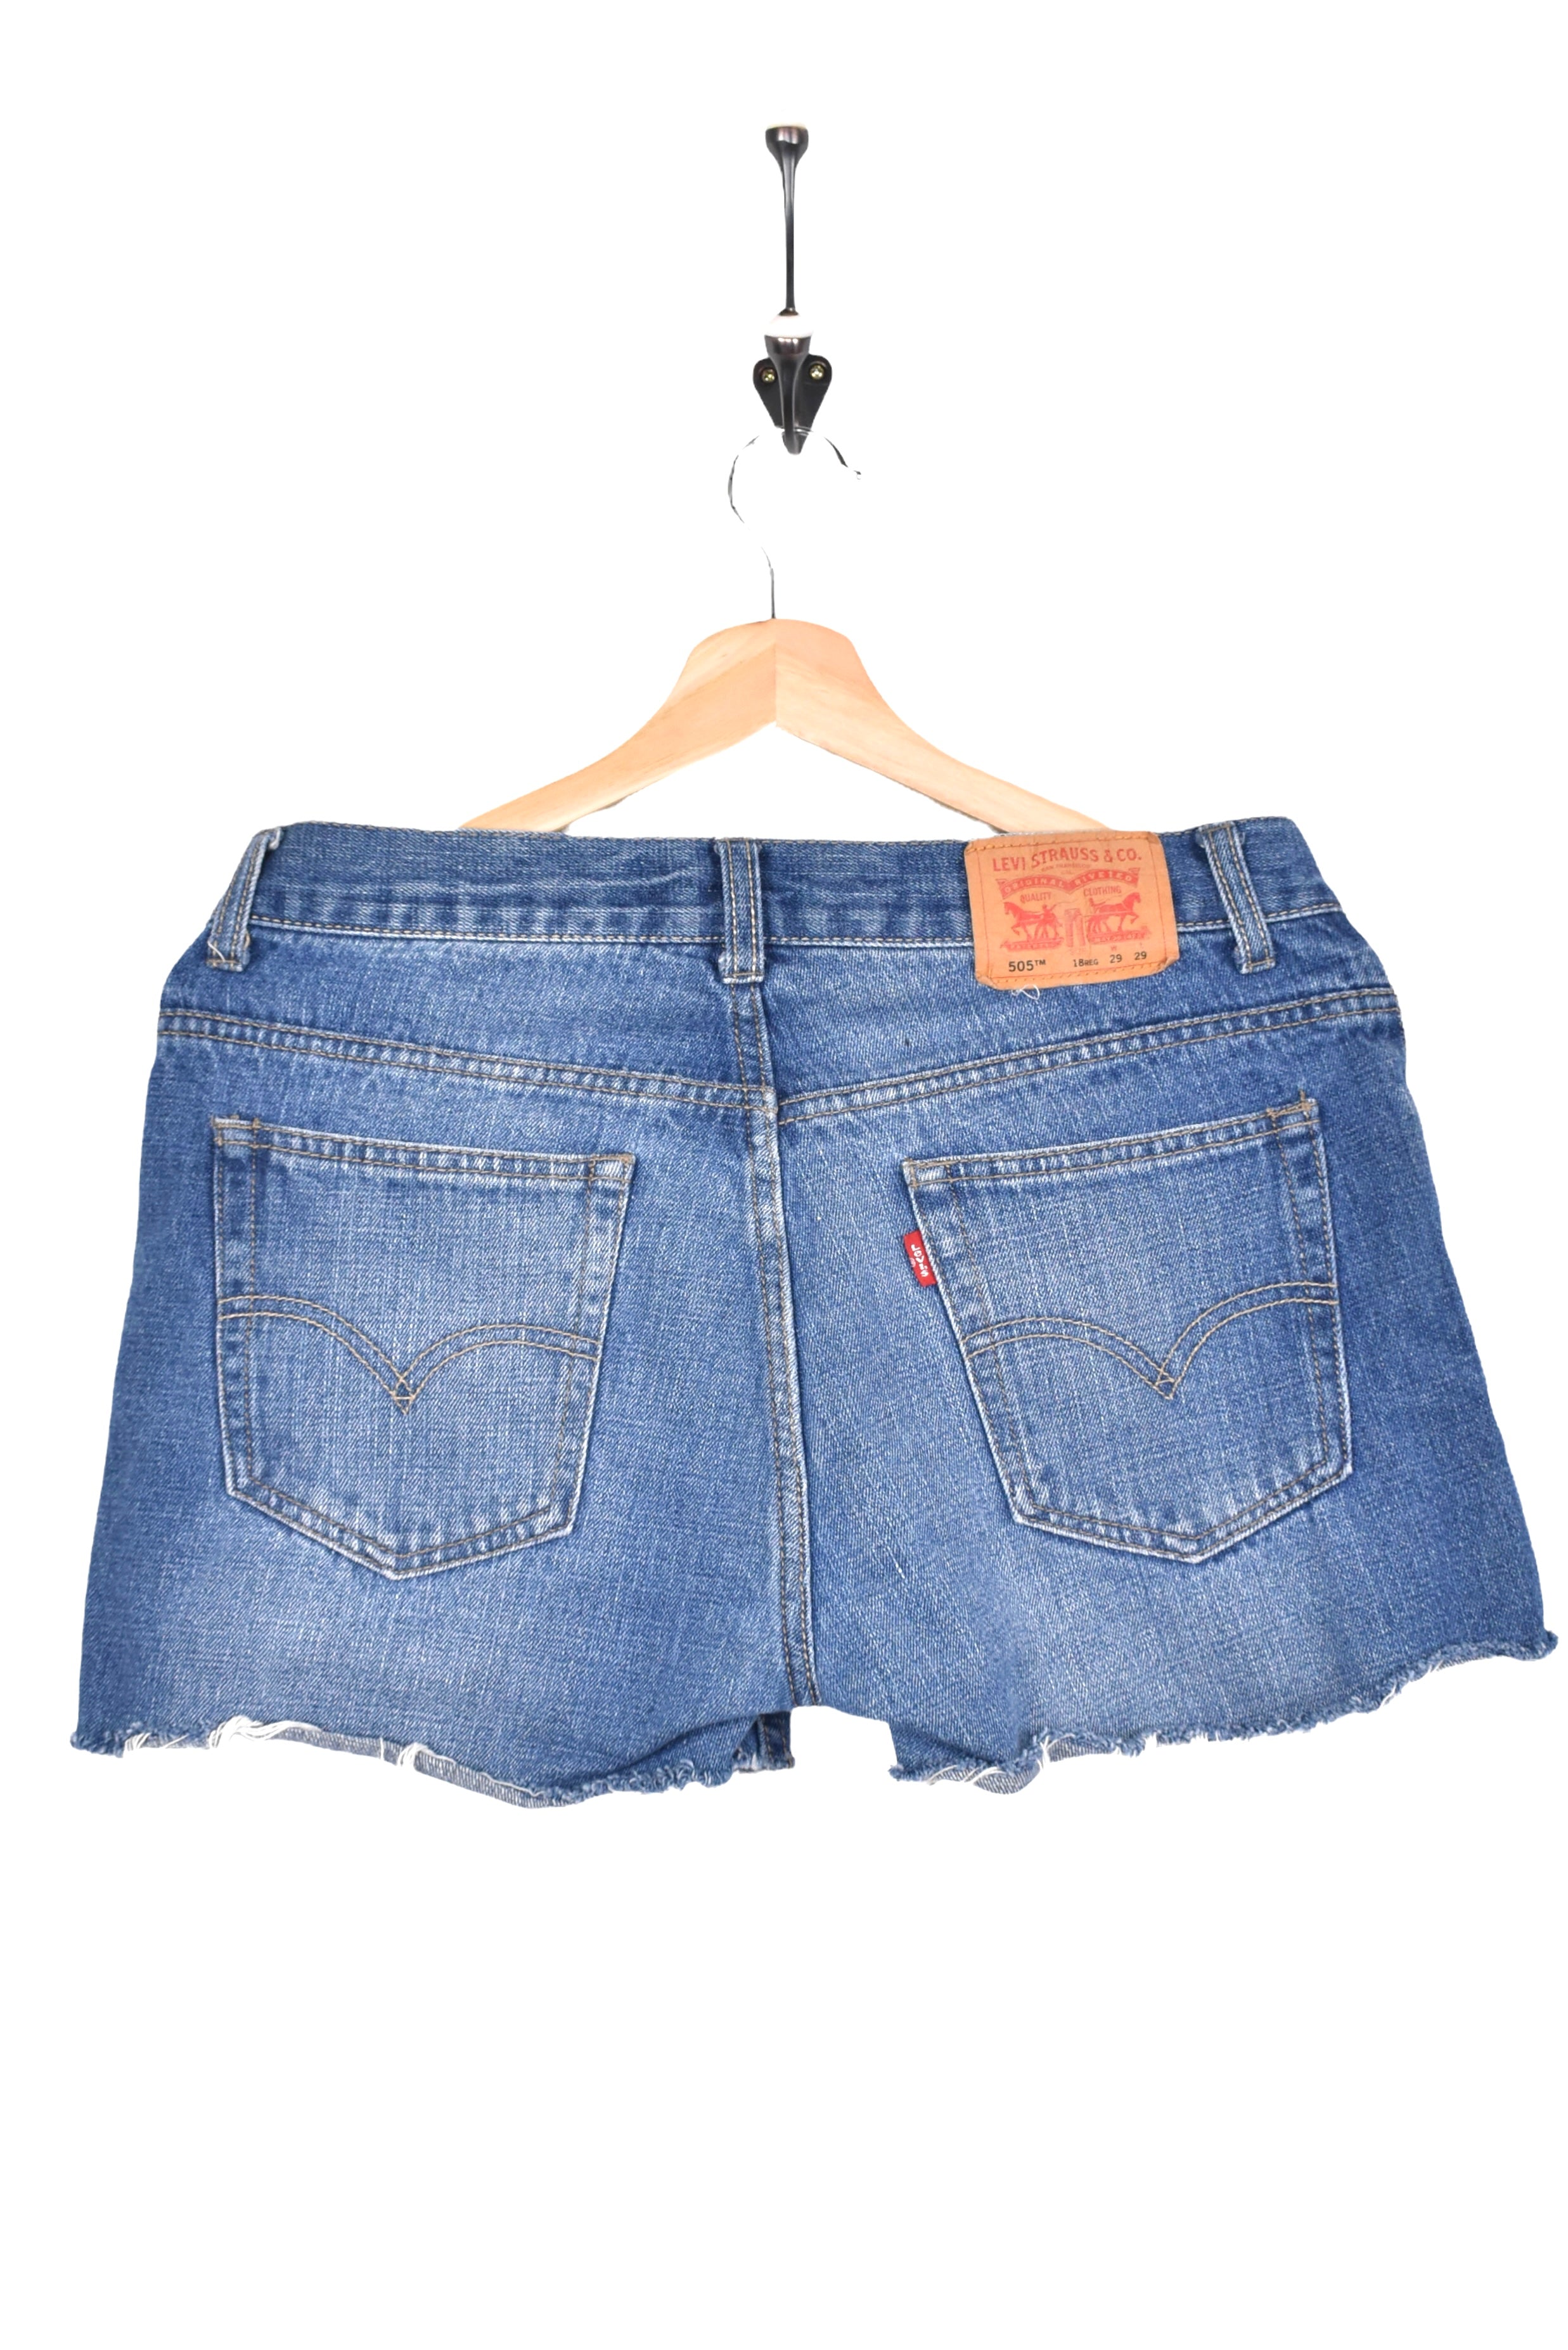 Women's vintage Levi's shorts, rework denim jeans - blue, W29" LEVIS